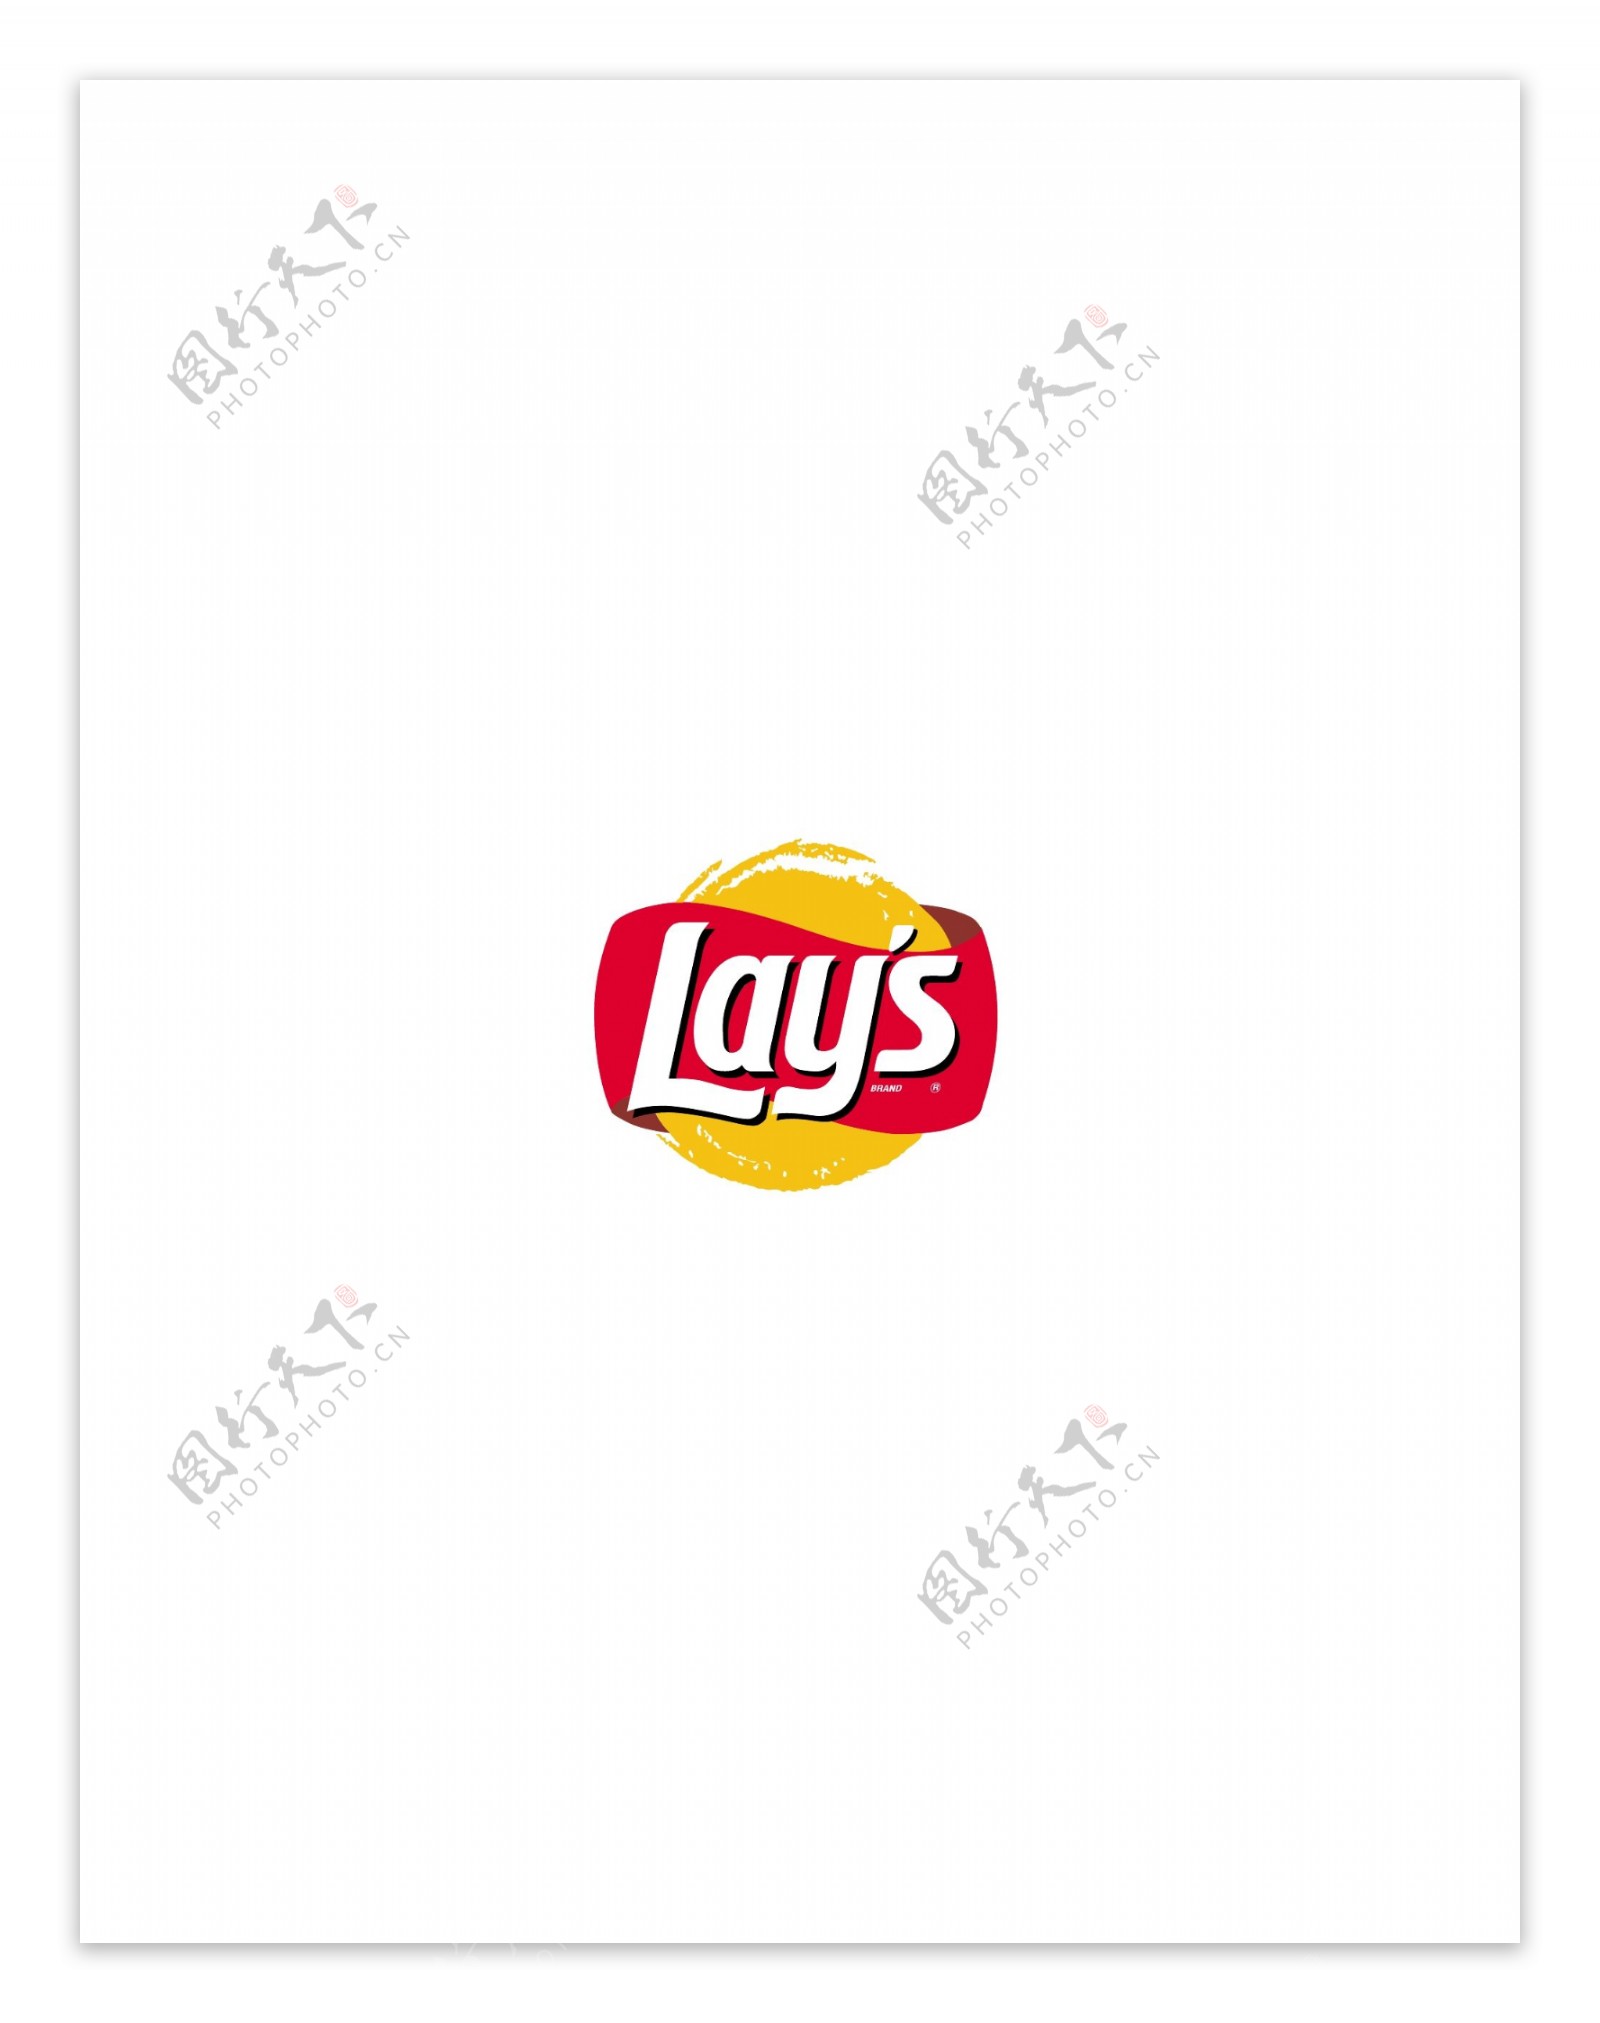 Layslogo设计欣赏足球和IT公司标志Lays下载标志设计欣赏